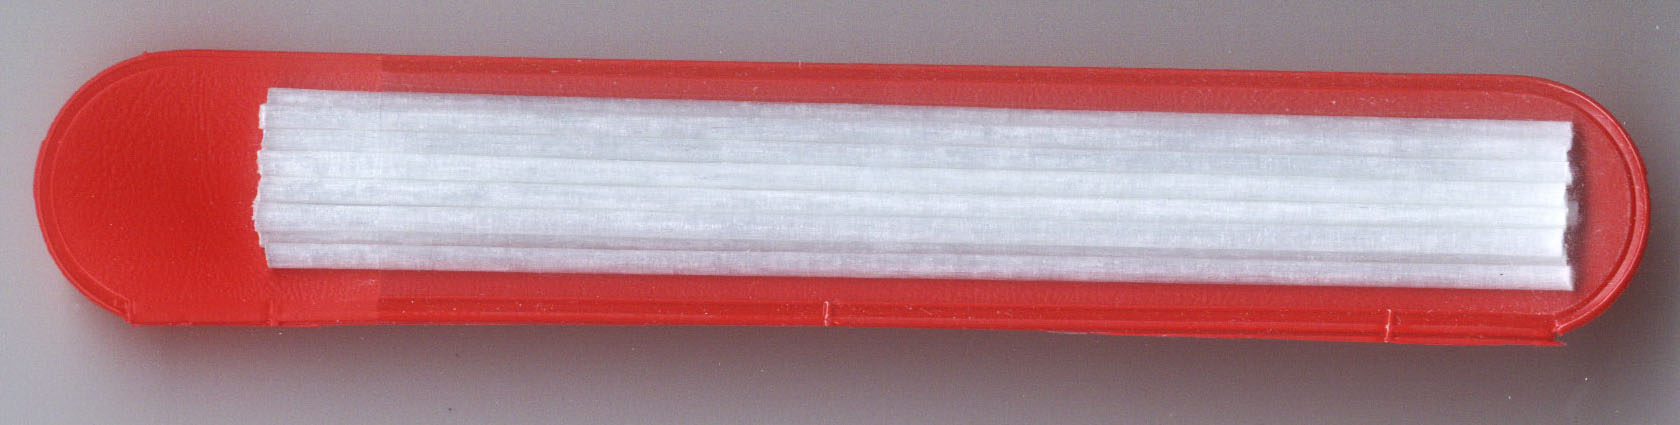 Náhradní násadky ze skleněných vláken průměr 2 mm - 1 ks